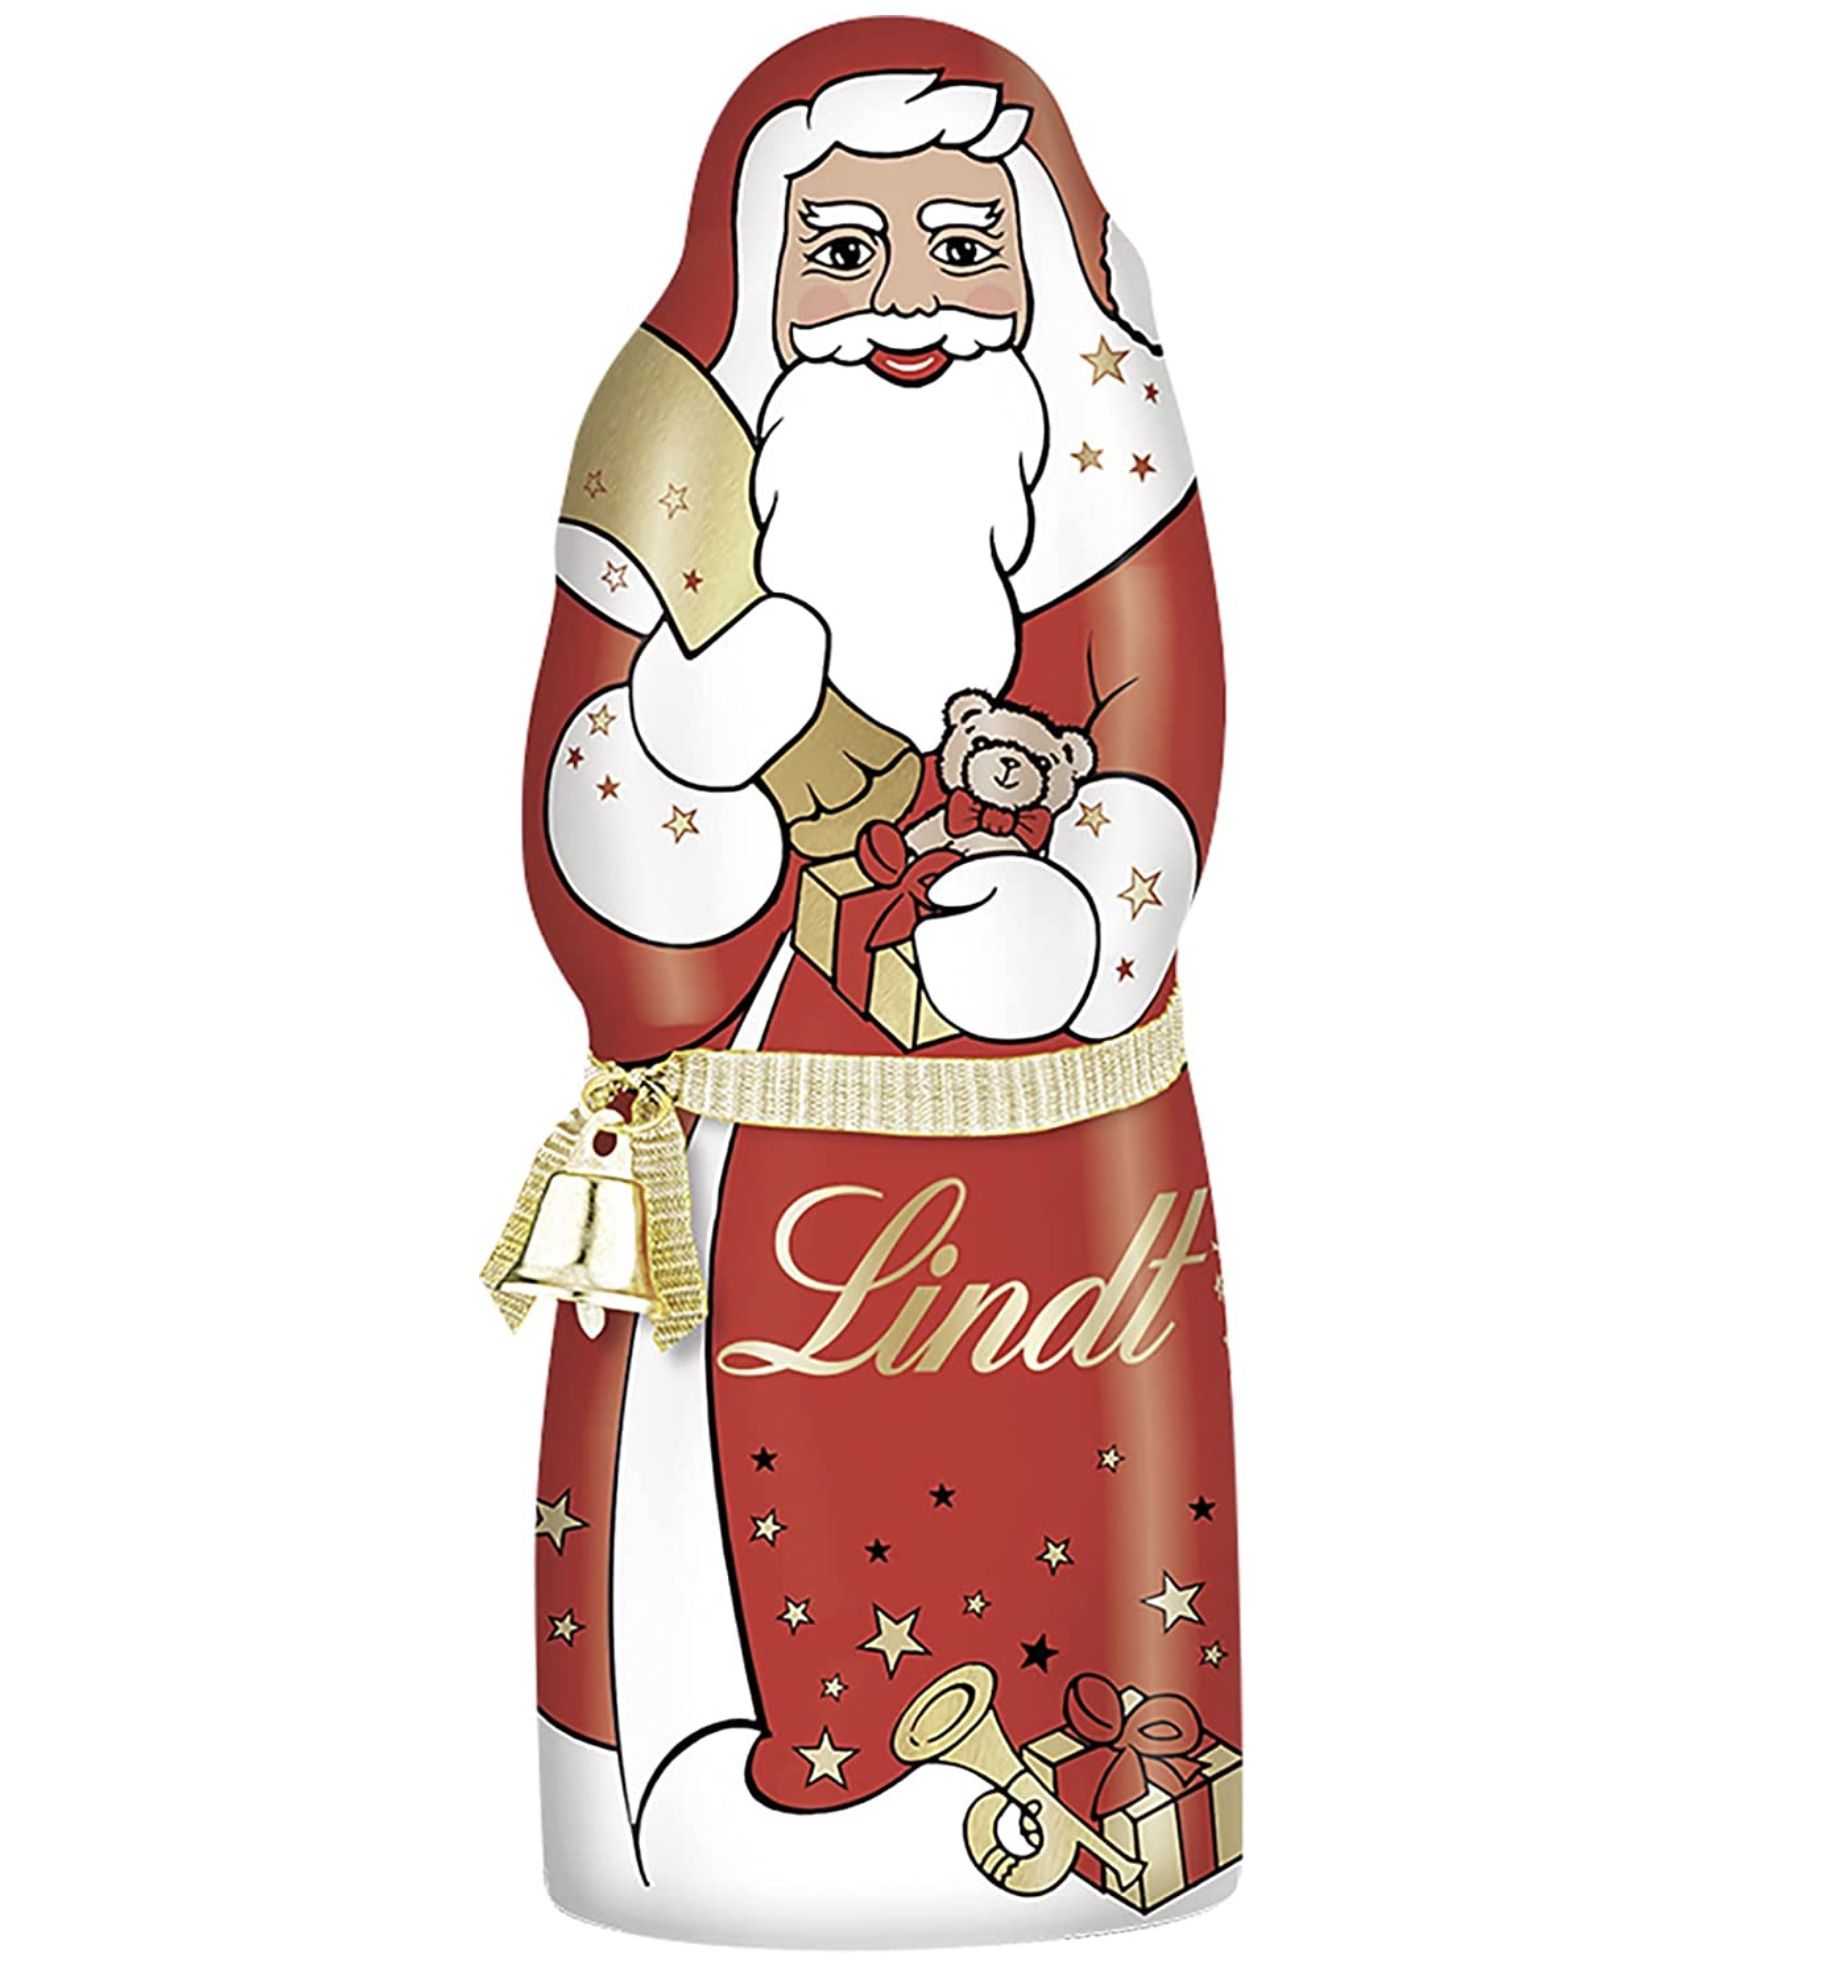 3x Lindt Schokoladen Weihnachtsmann je 125 g für 9,99€ (statt 15€)   Prime